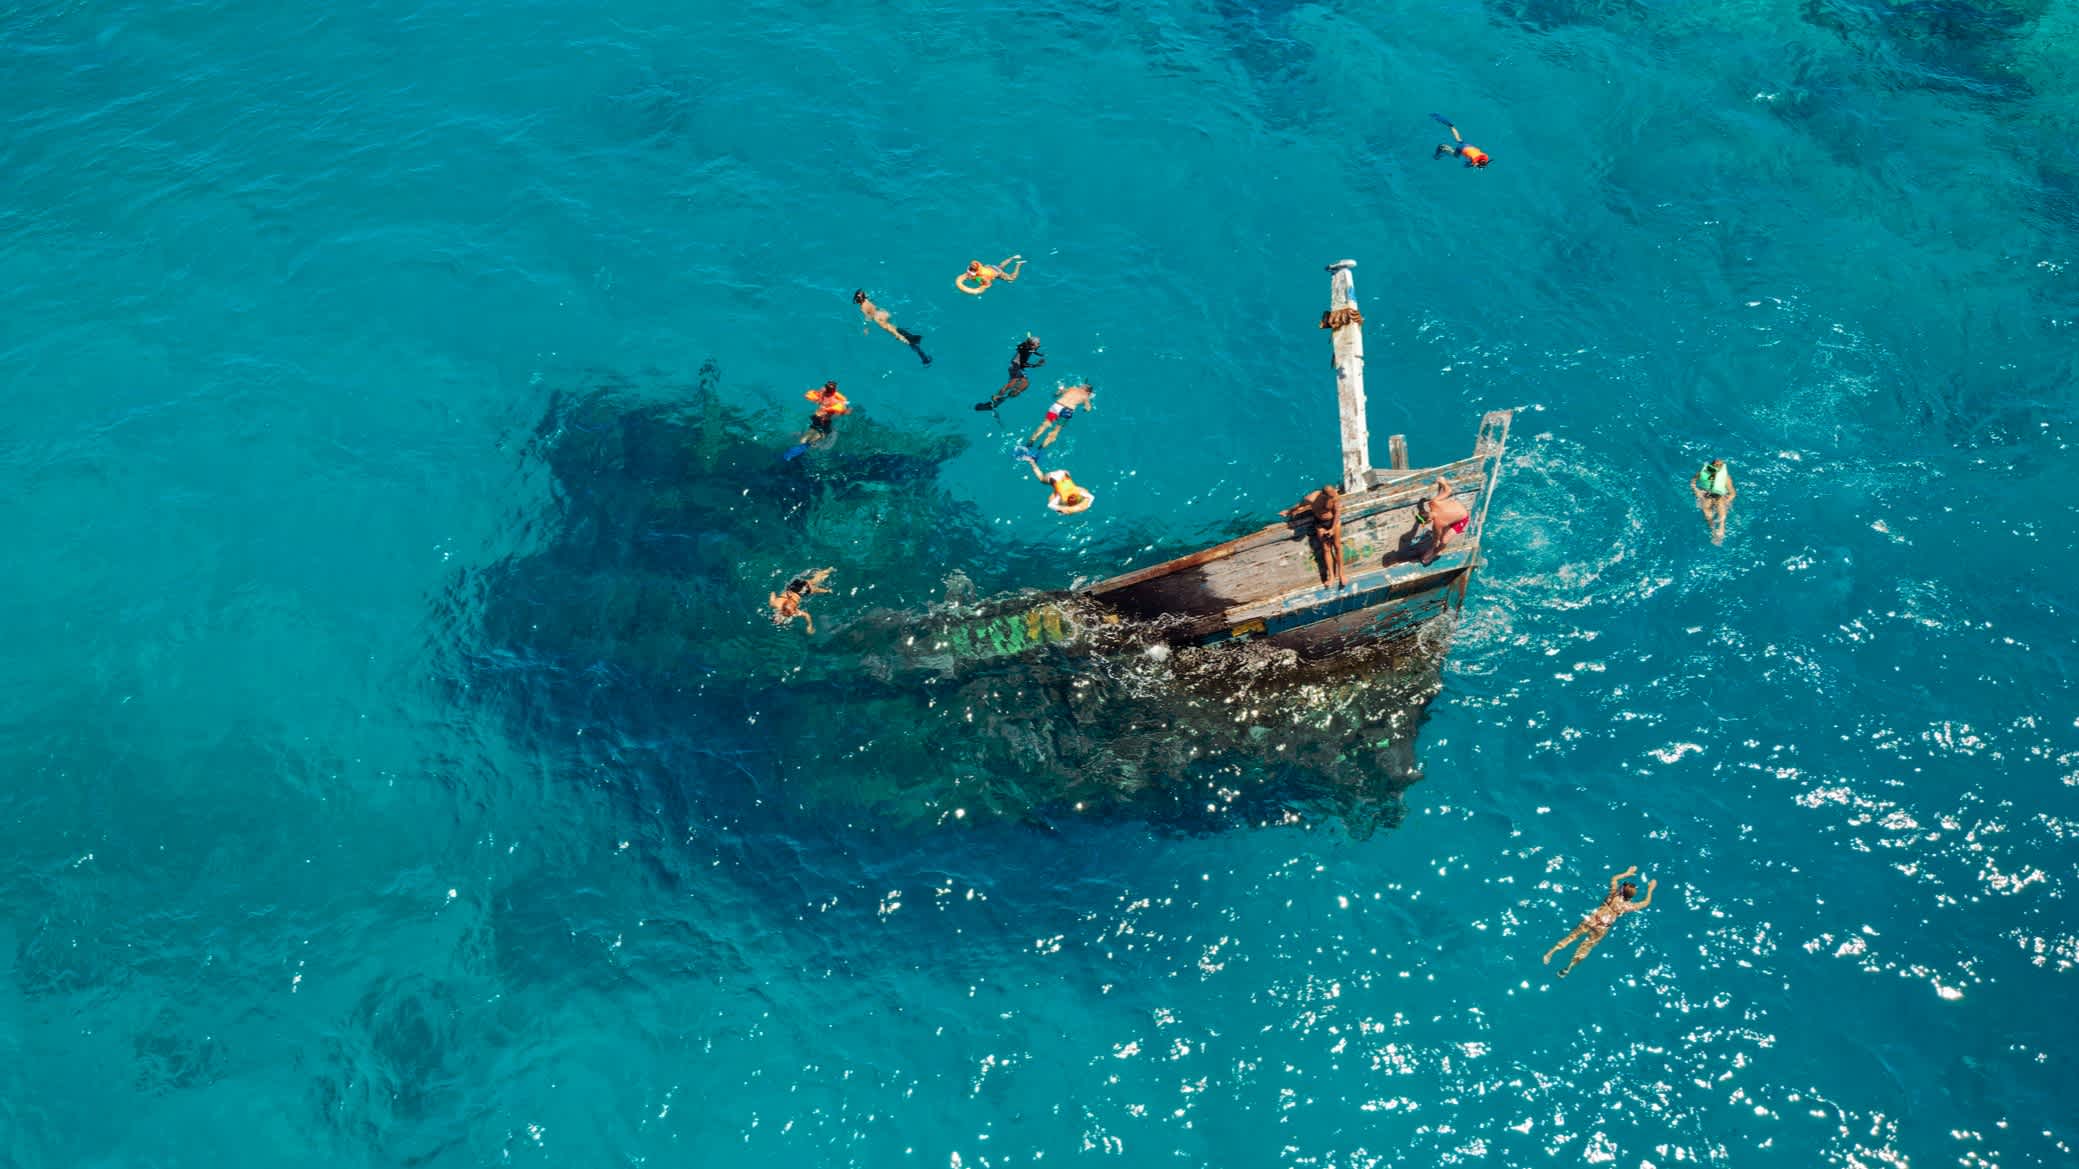 Menschen tauchen und schnorcheln in der Nähe eines versunkenen Schiffs, das aus dem Wasser ragt